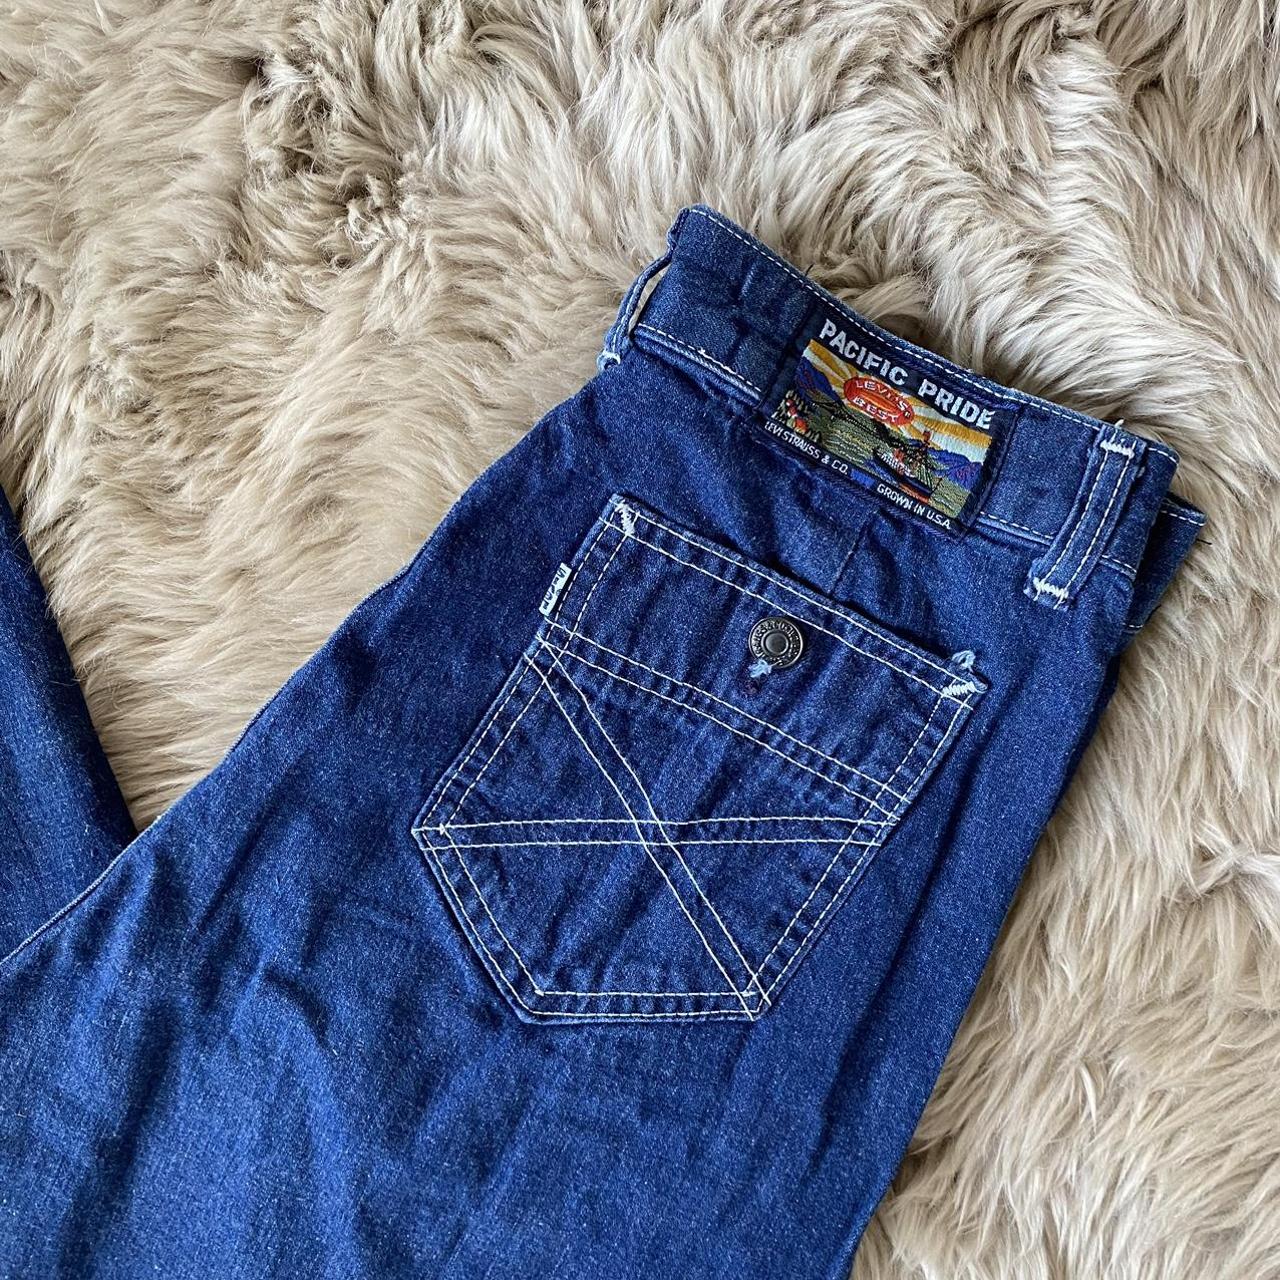 Vintage 1970s Levis Pacific Pride Jeans Gorgeous... - Depop